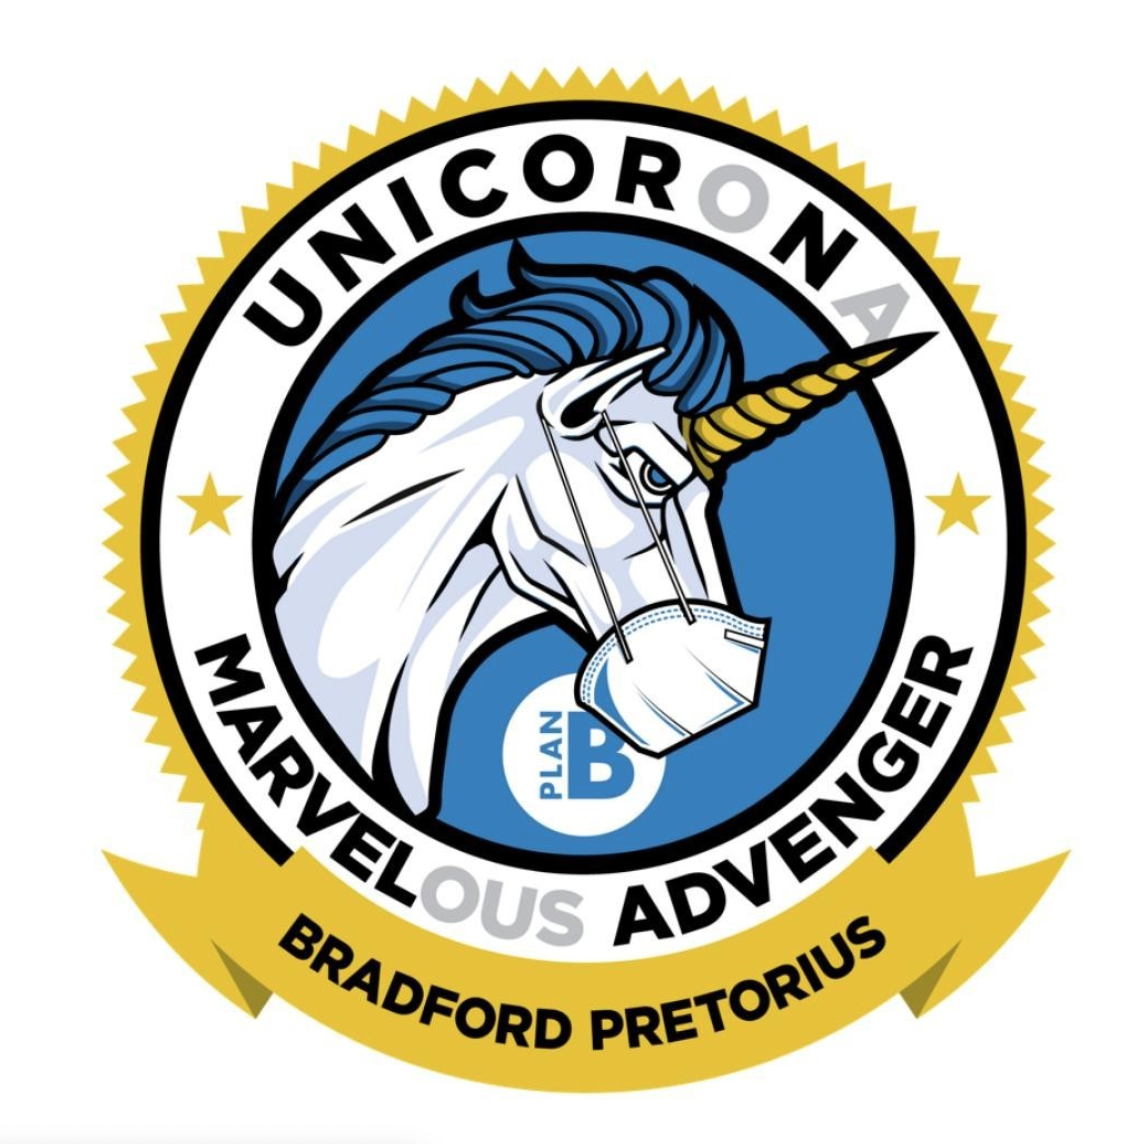 bradford pretorious unicorn award